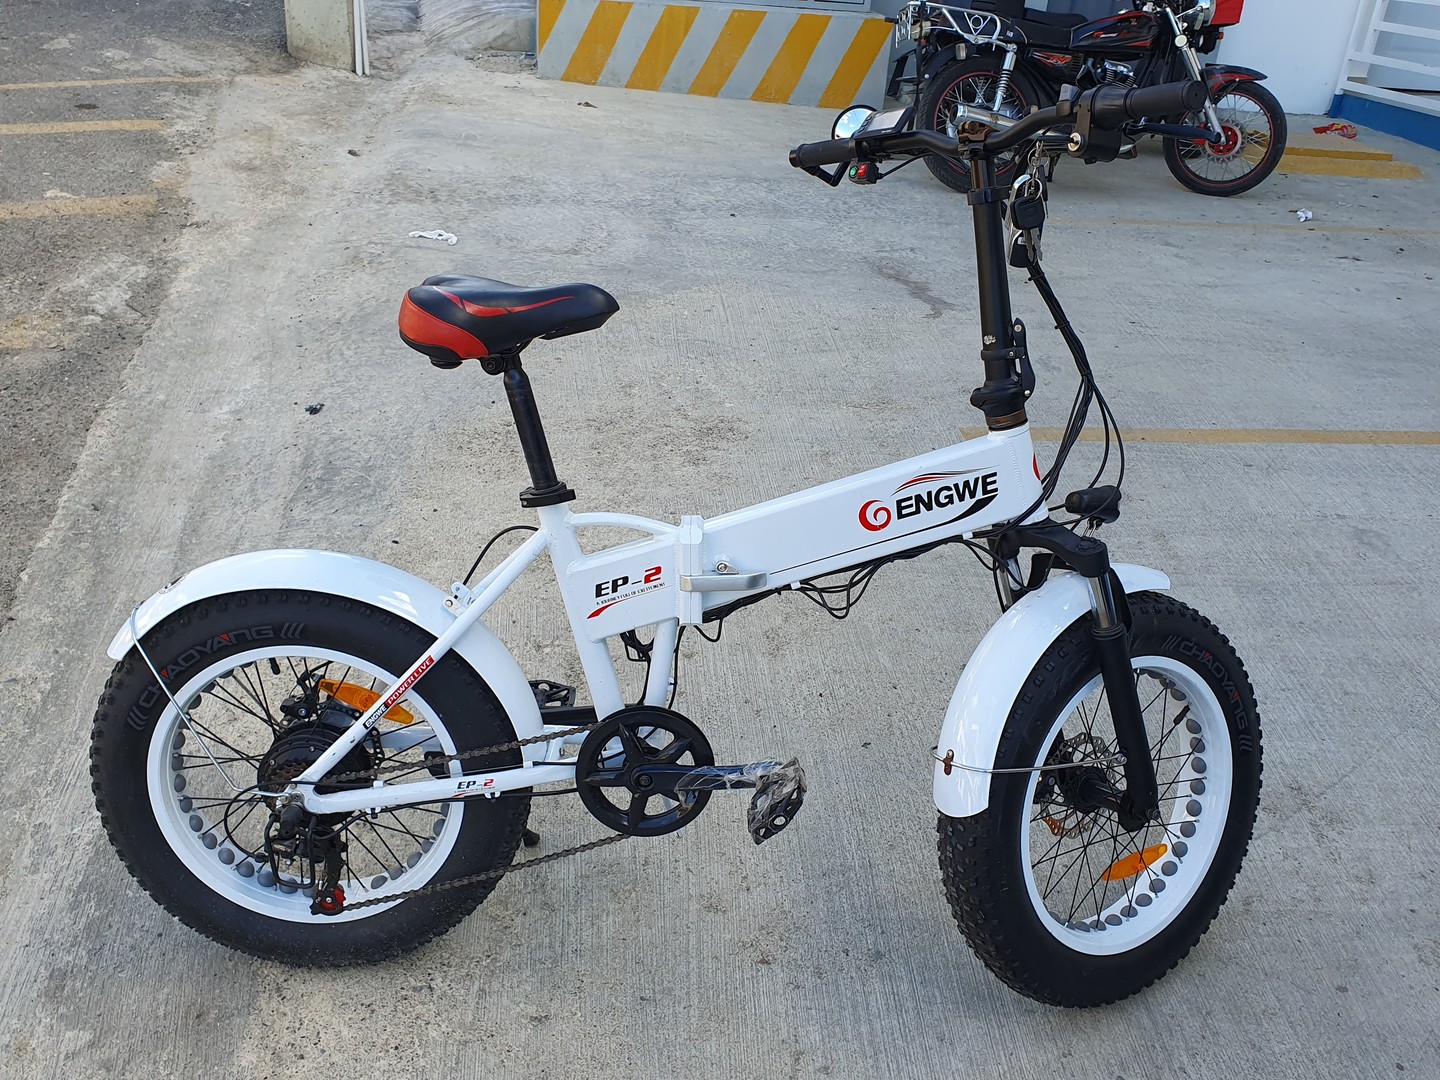 bicicletas y accesorios - Bicicleta eléctrica engwe 500w